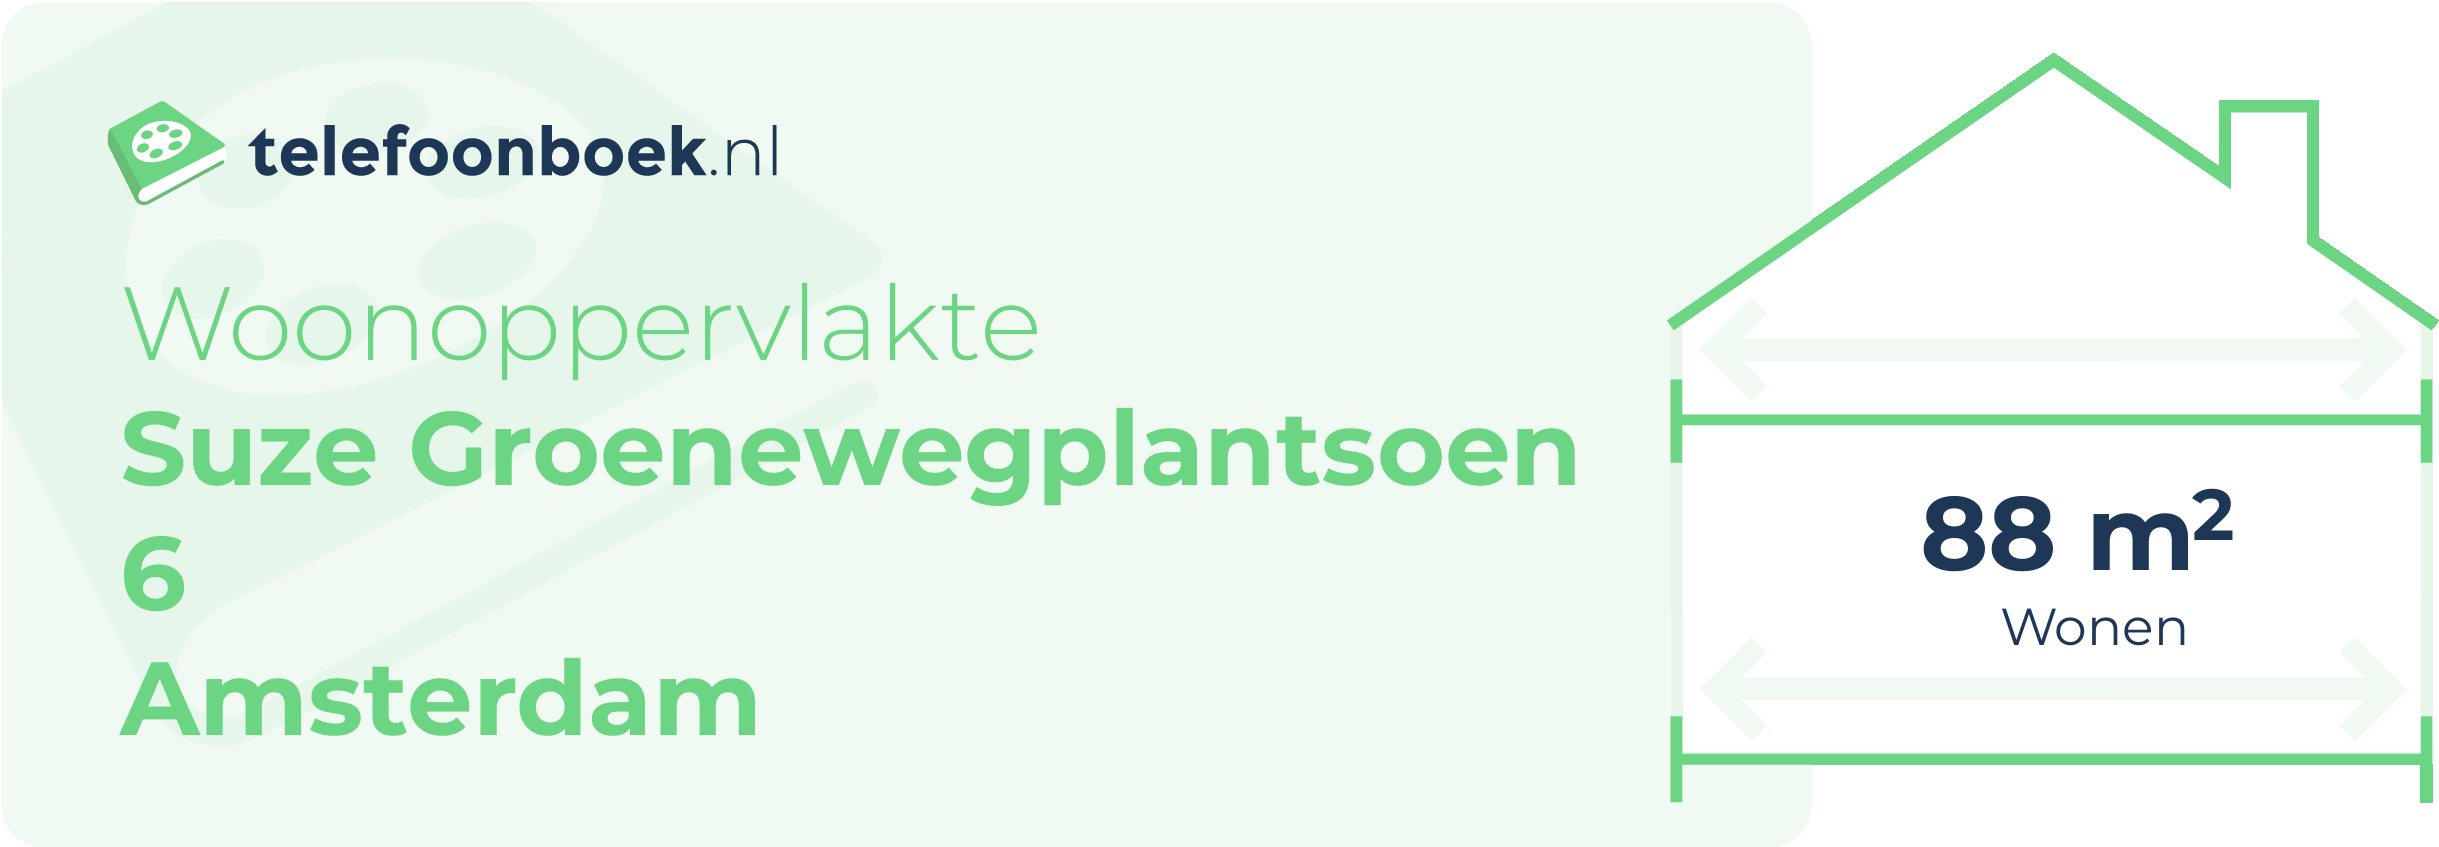 Woonoppervlakte Suze Groenewegplantsoen 6 Amsterdam